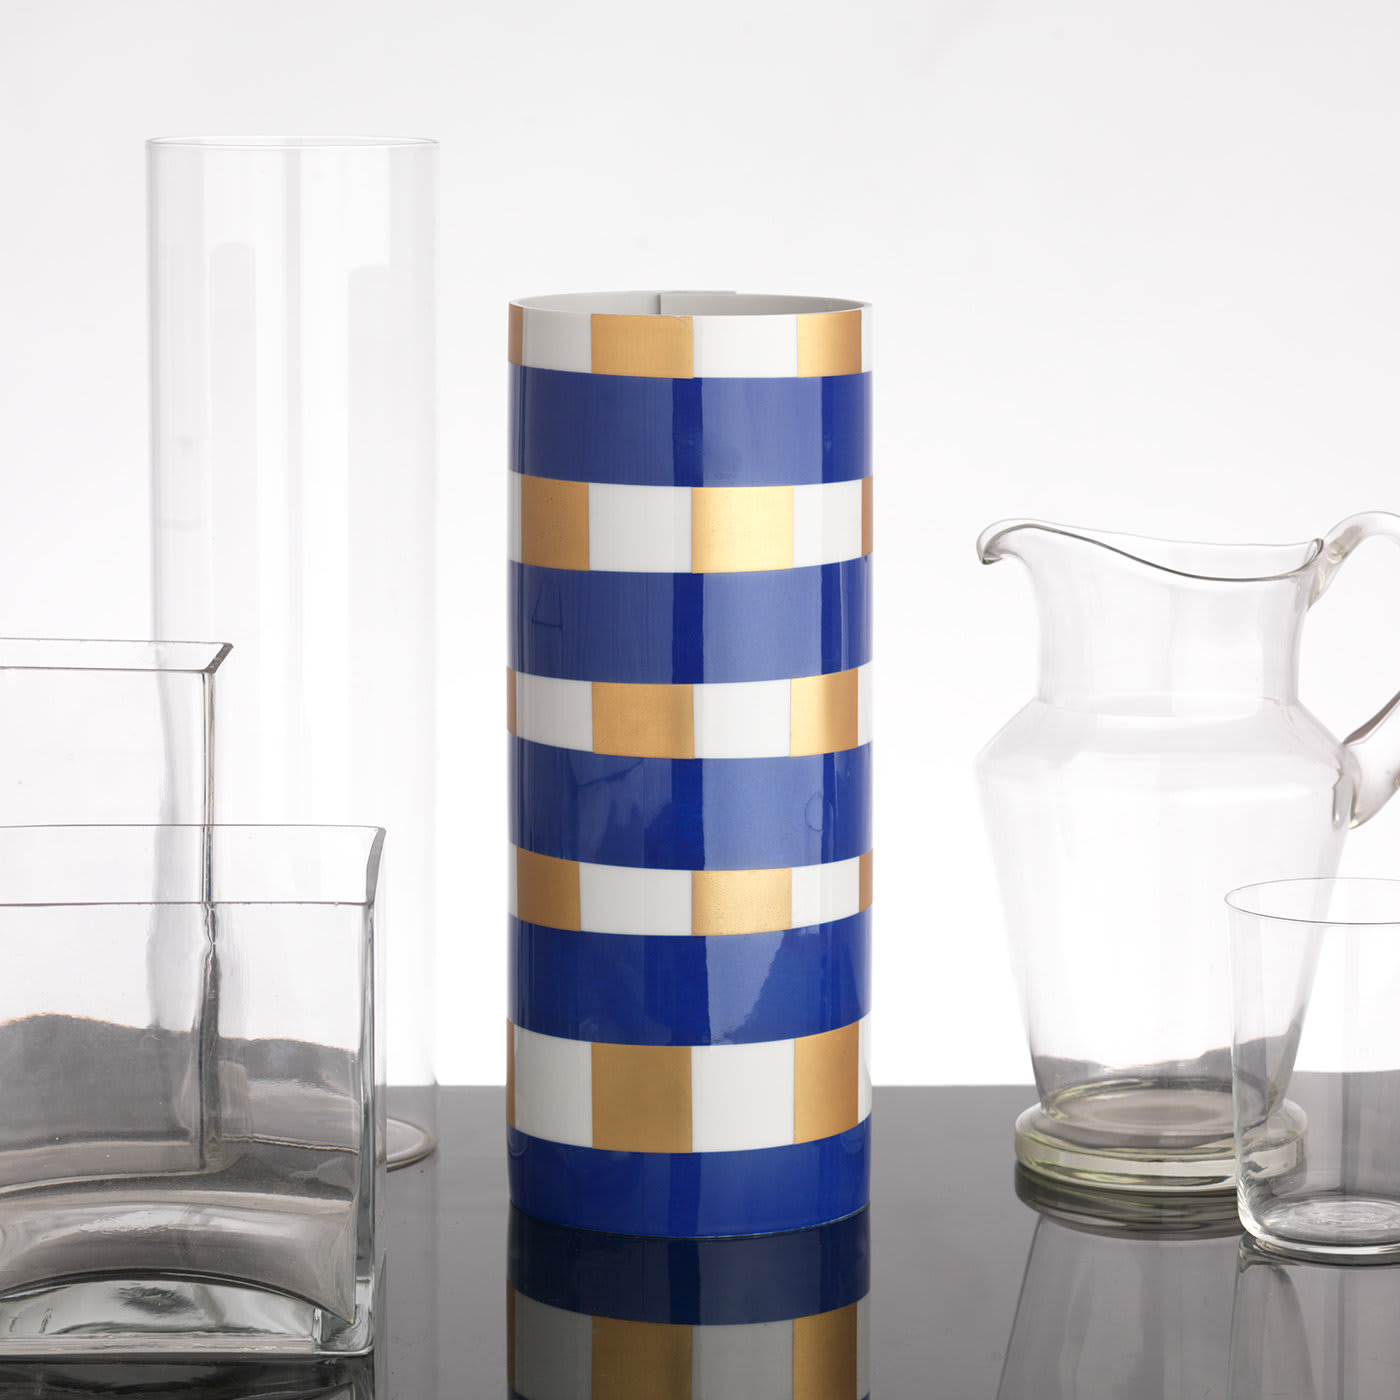 Cobalt Blue Vase #1 - Vincenzo Cutugno